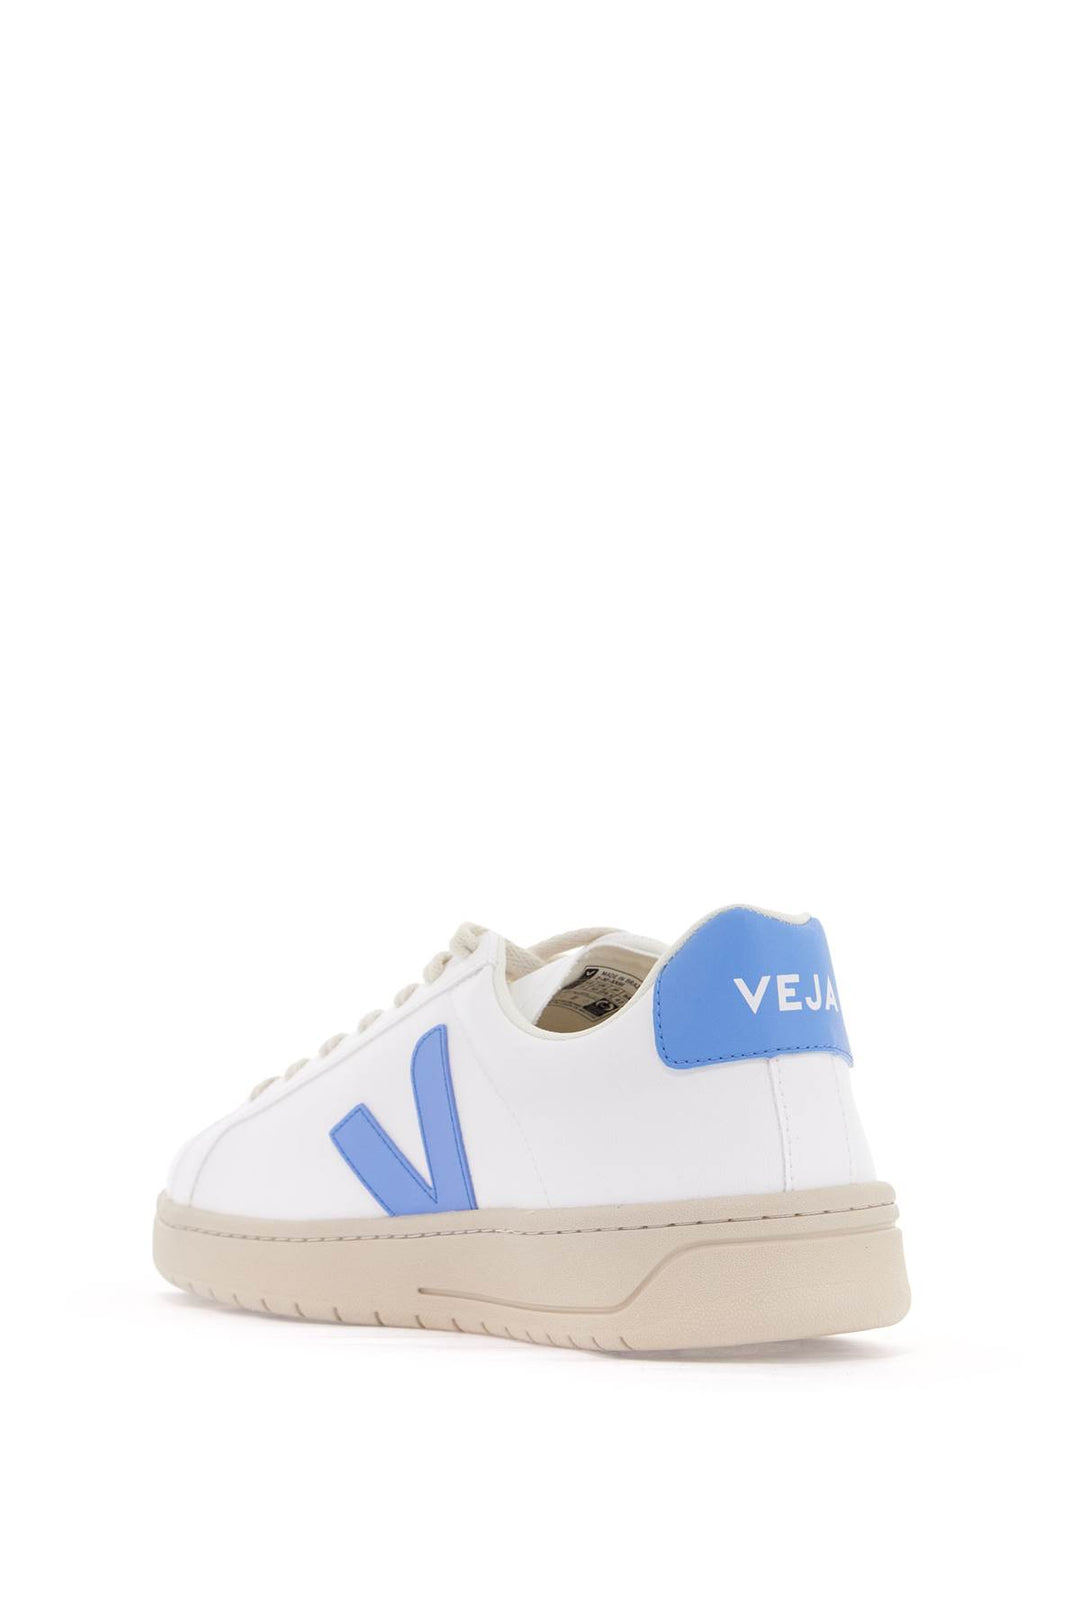 Veja Urca Vegan Sneakers   White